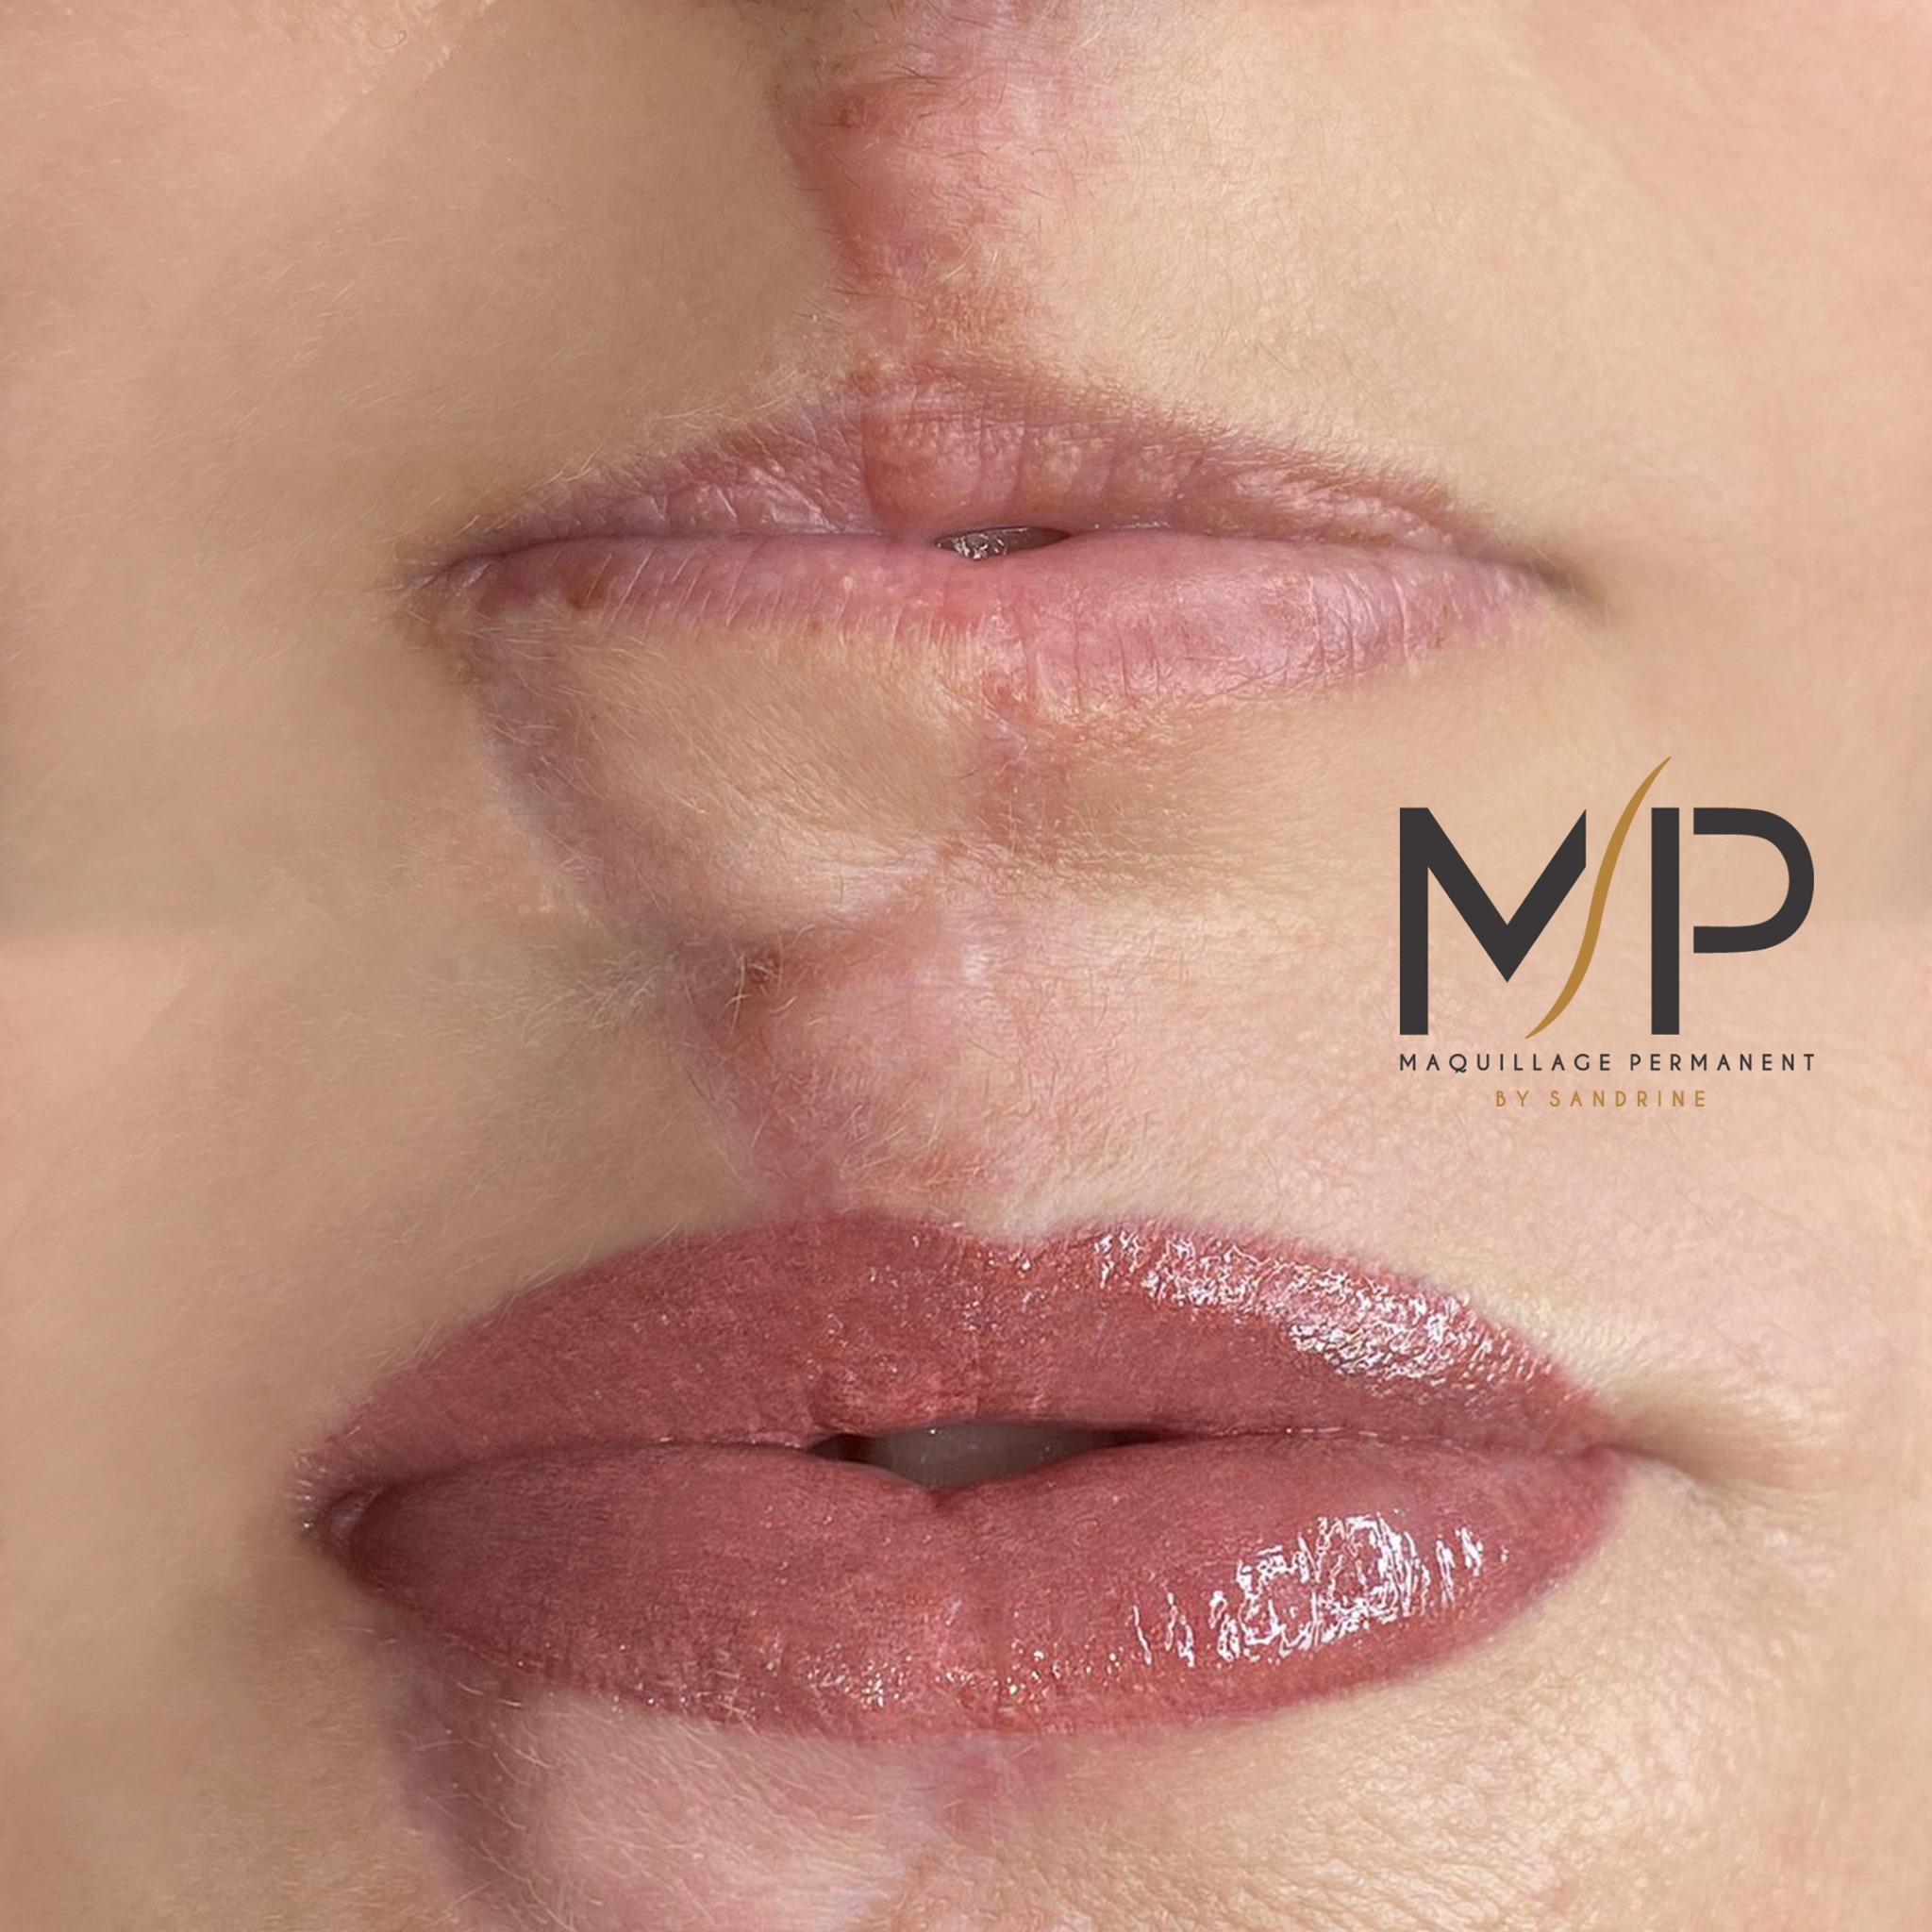 Maquillage Permanent Bouche Lèvre by Sandrine a Montpellier Maud Elite et Artiste Sviatoslav 31-1